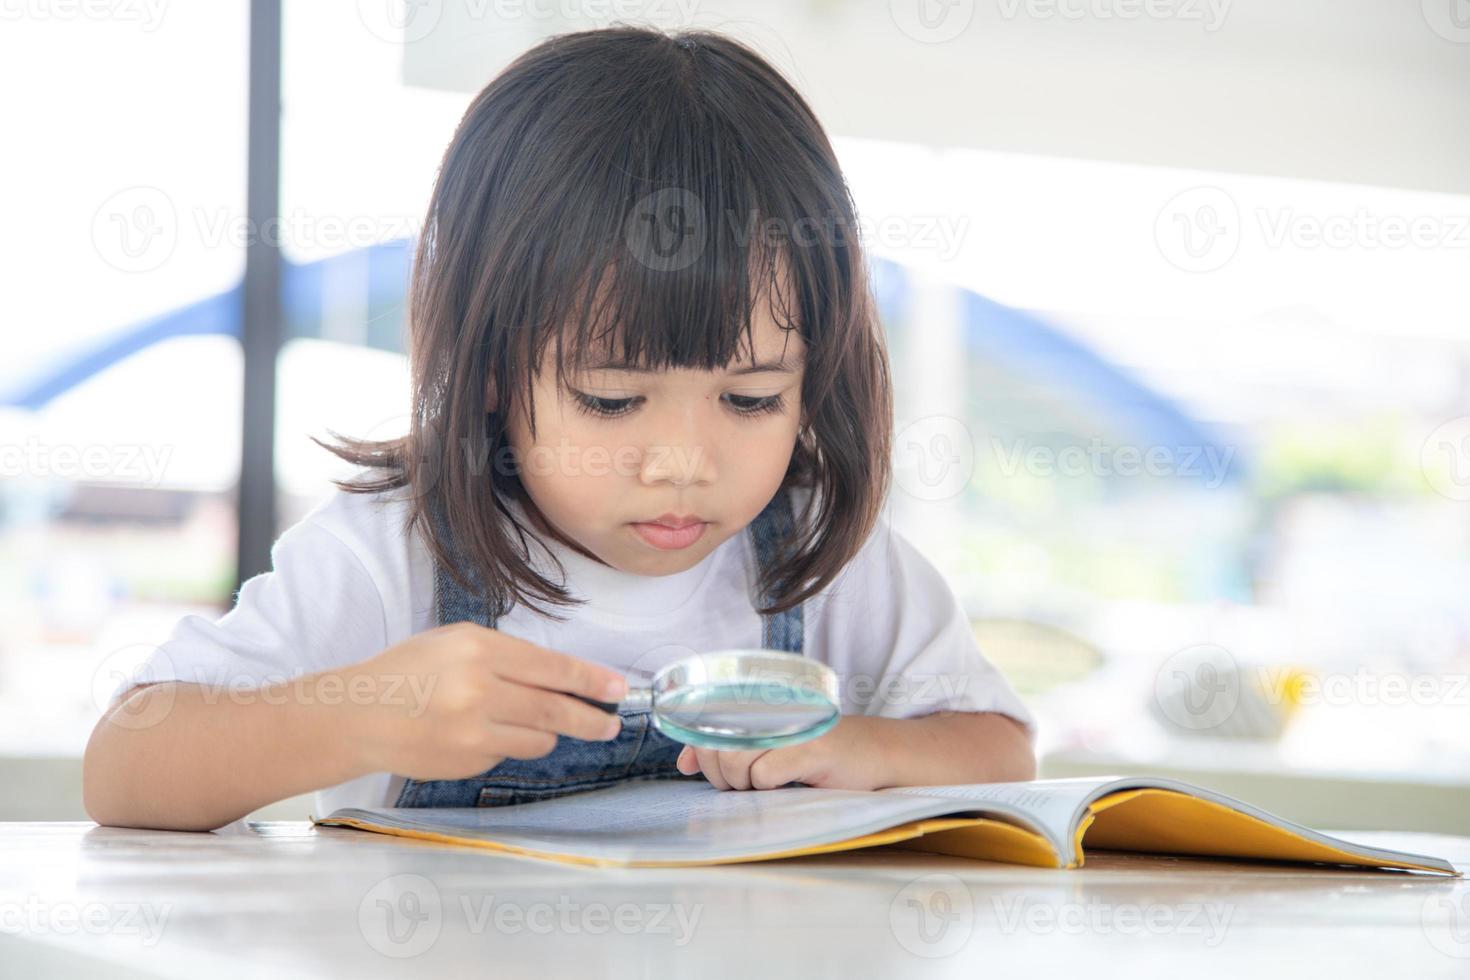 Asiatisches kleines Mädchen, das die Bücher auf dem Schreibtisch mit einer Lupe liest foto